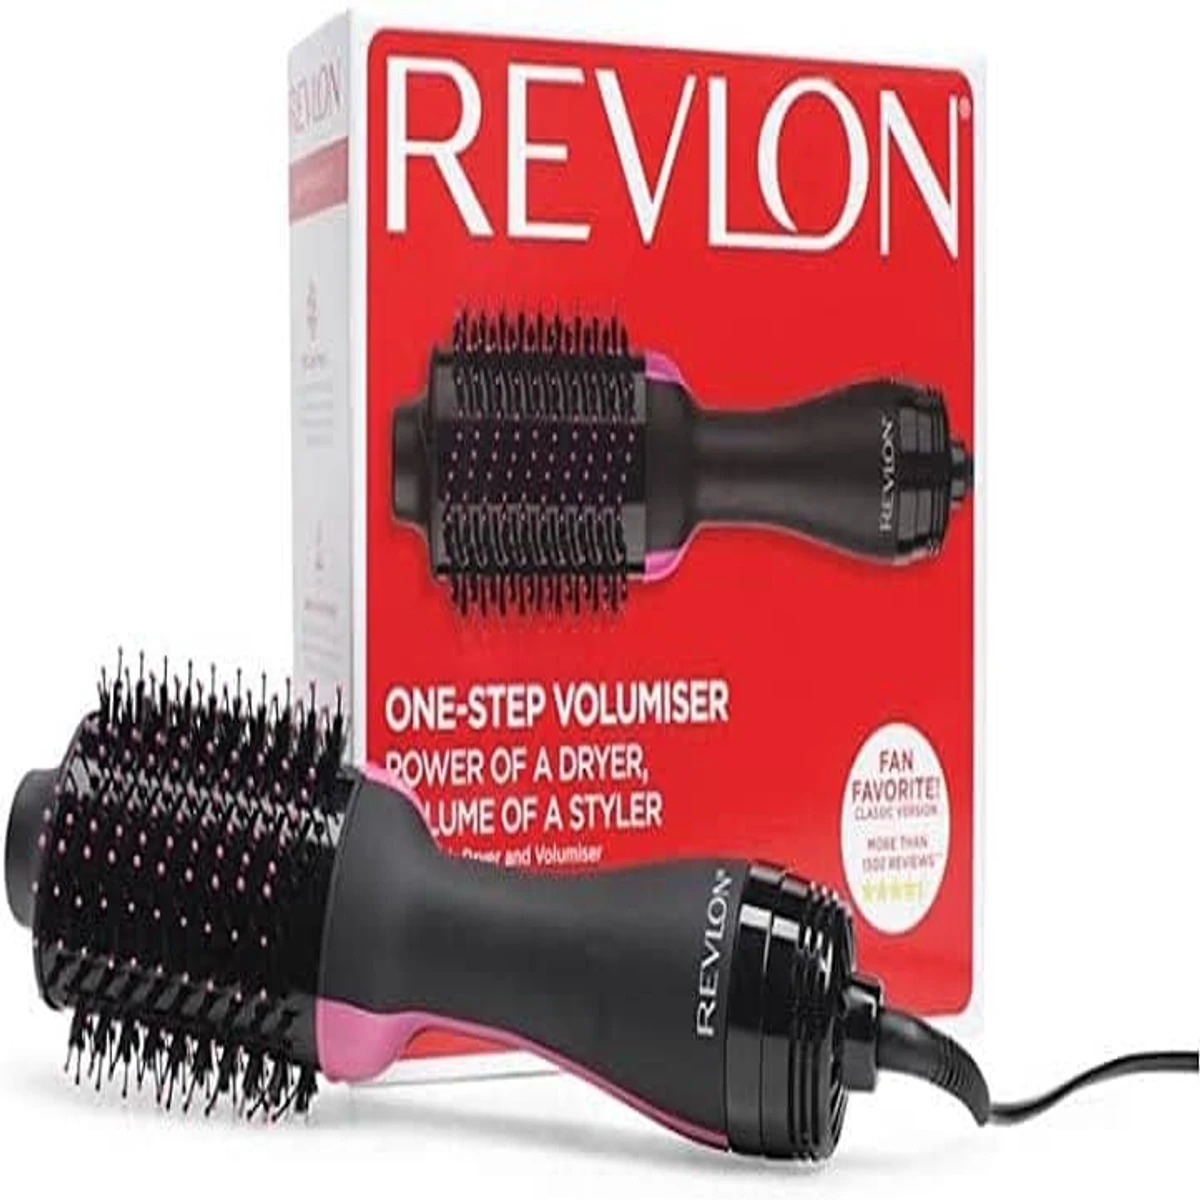 Revlon hair straightener brush